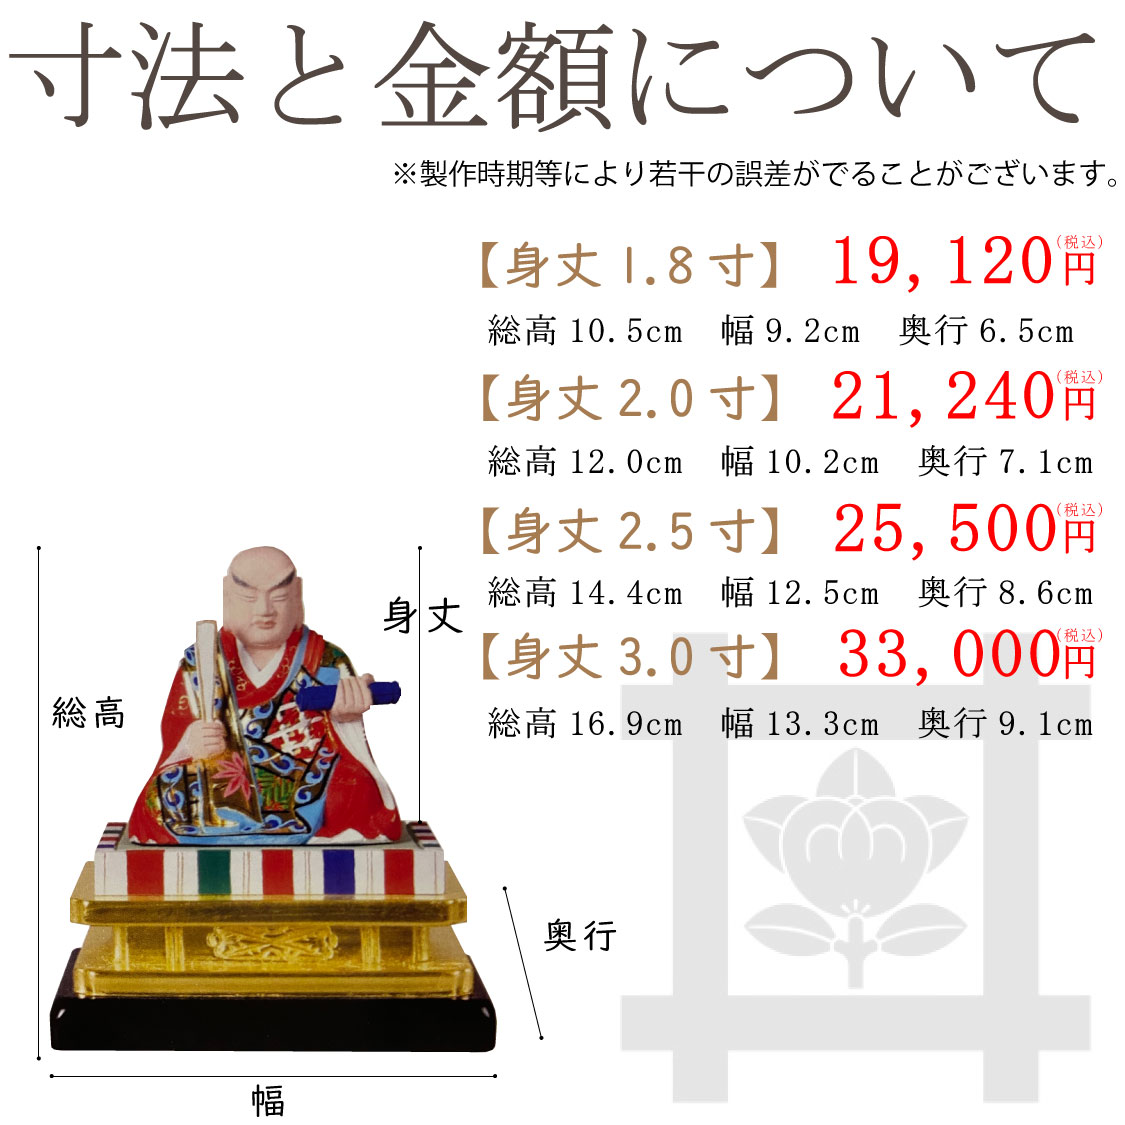 日蓮聖人像（彩色仕上げ）の寸法と価格